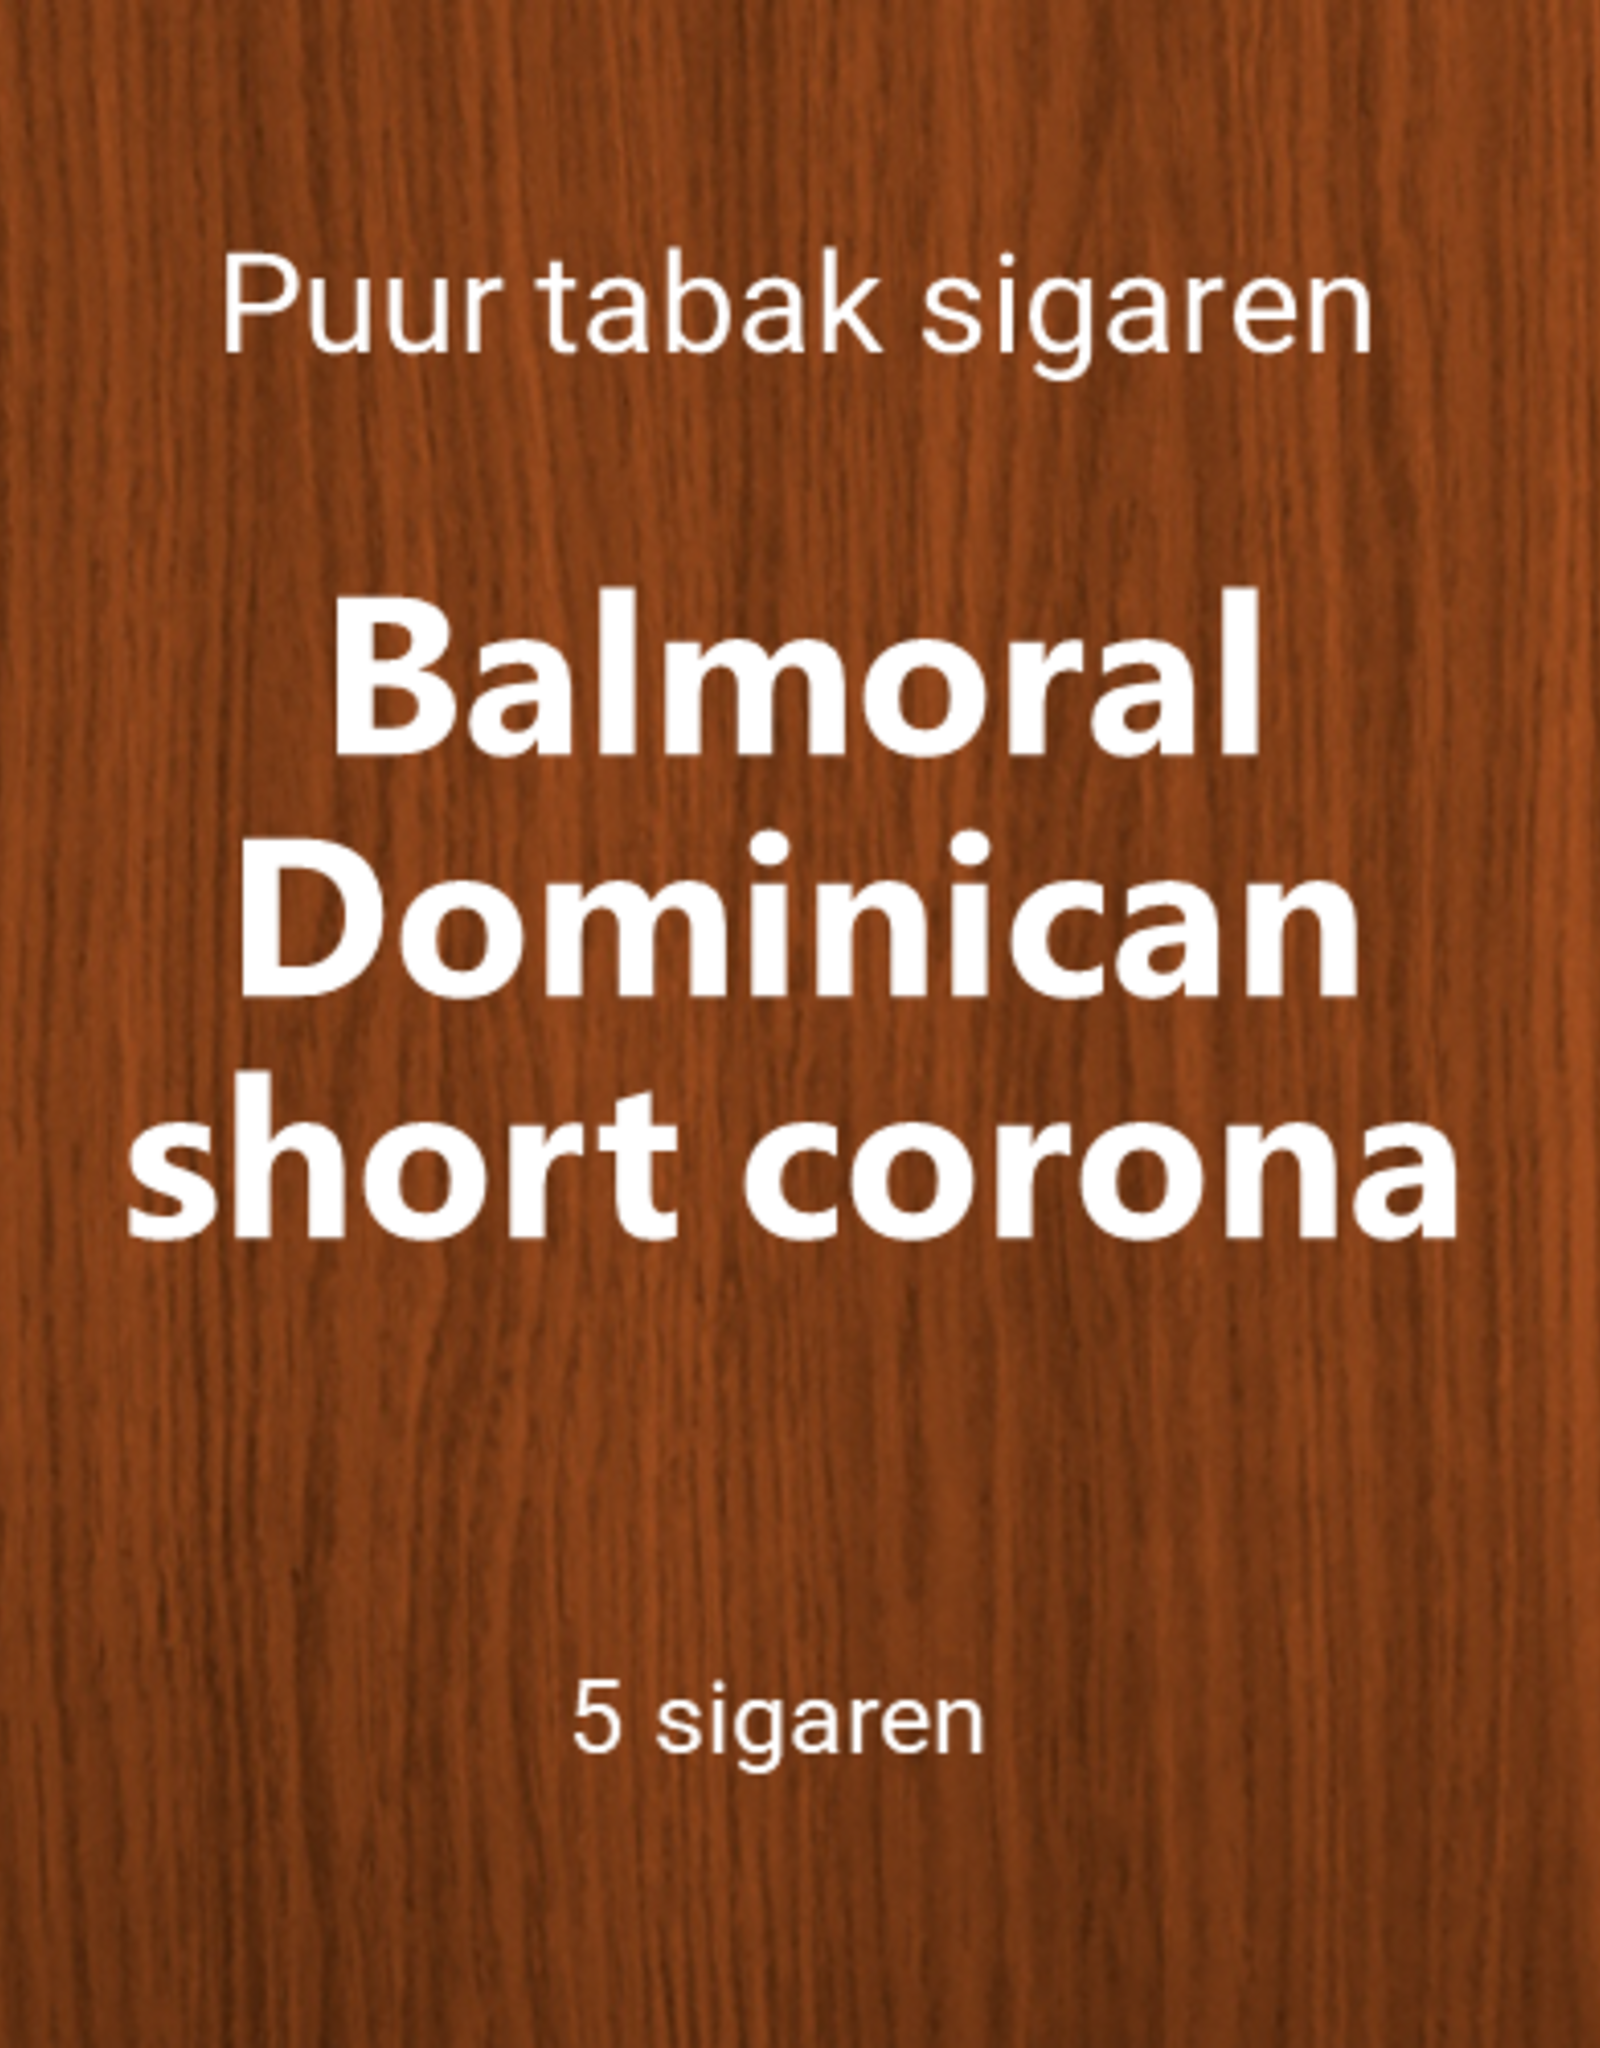 Balmoral Dominican 5 short corona